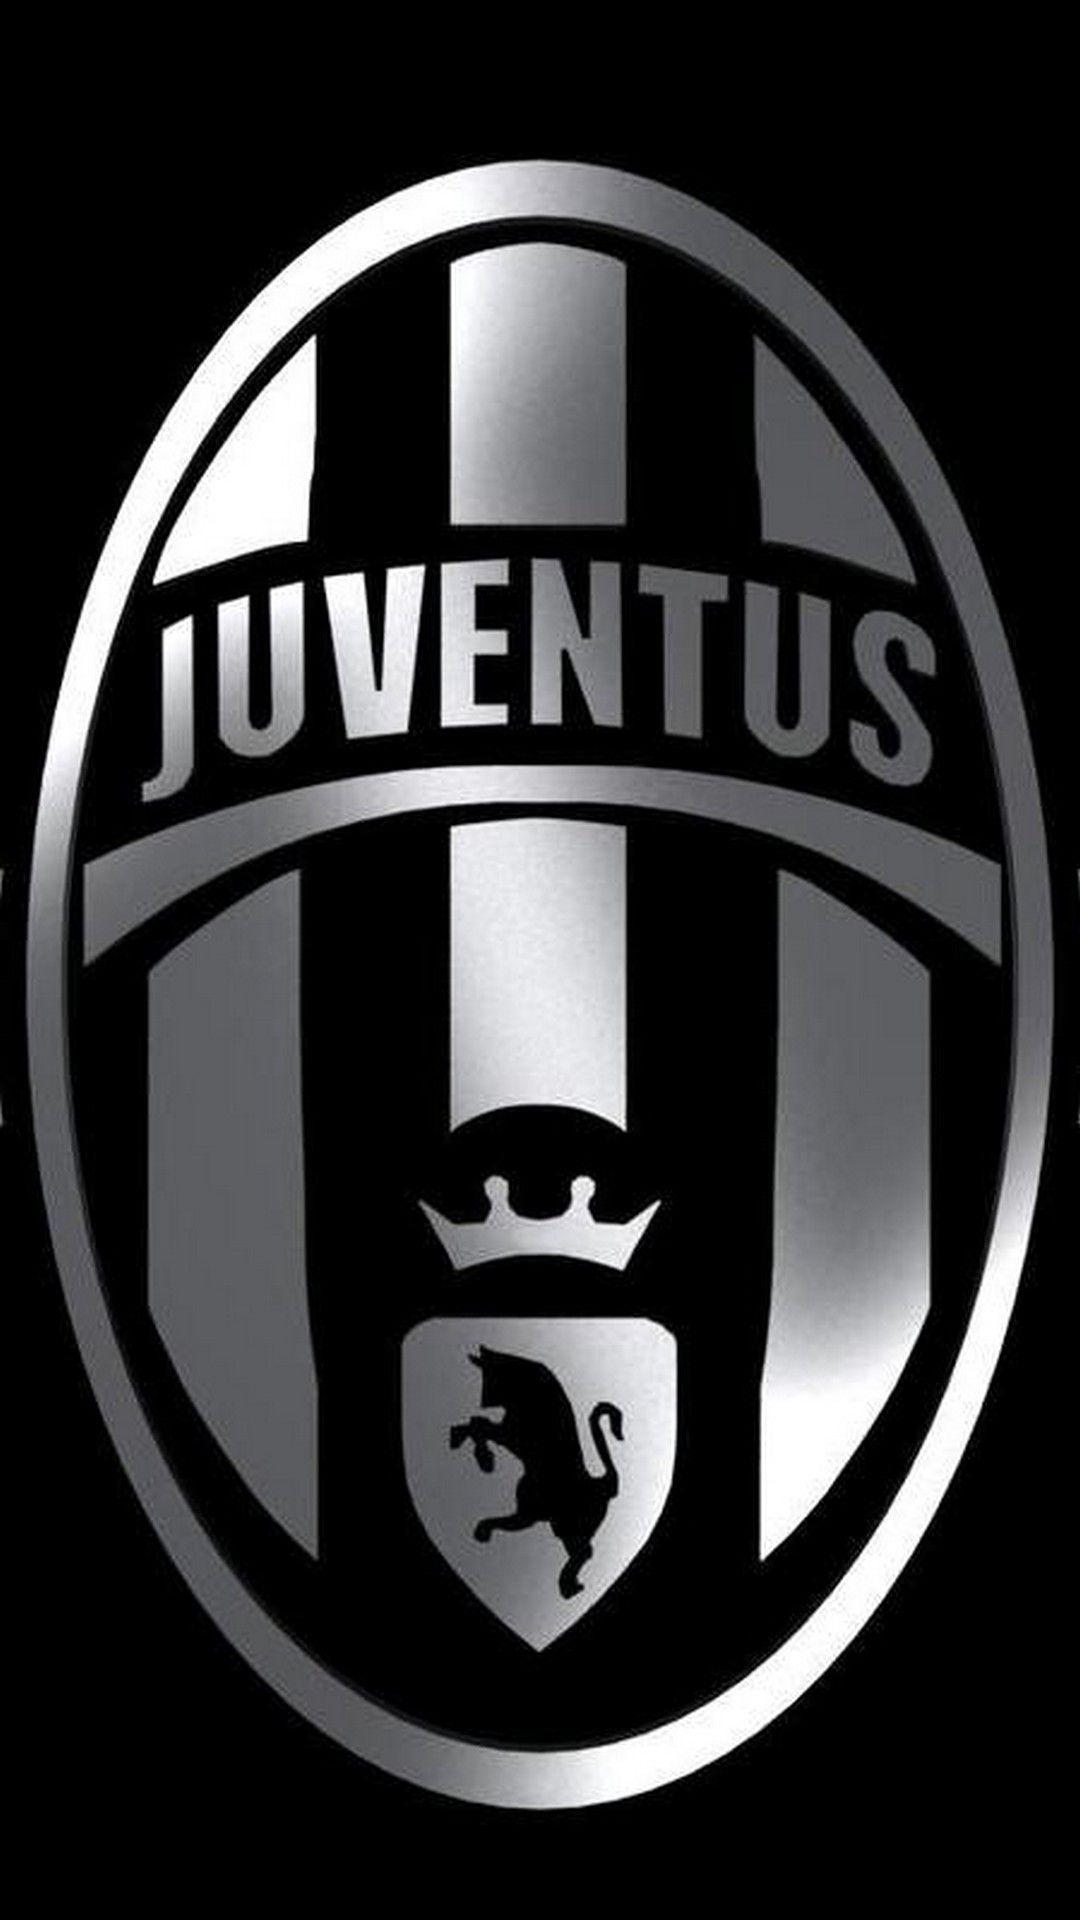 Juventus Logo Wallpaper iPhone. Juventus logo, Juventus